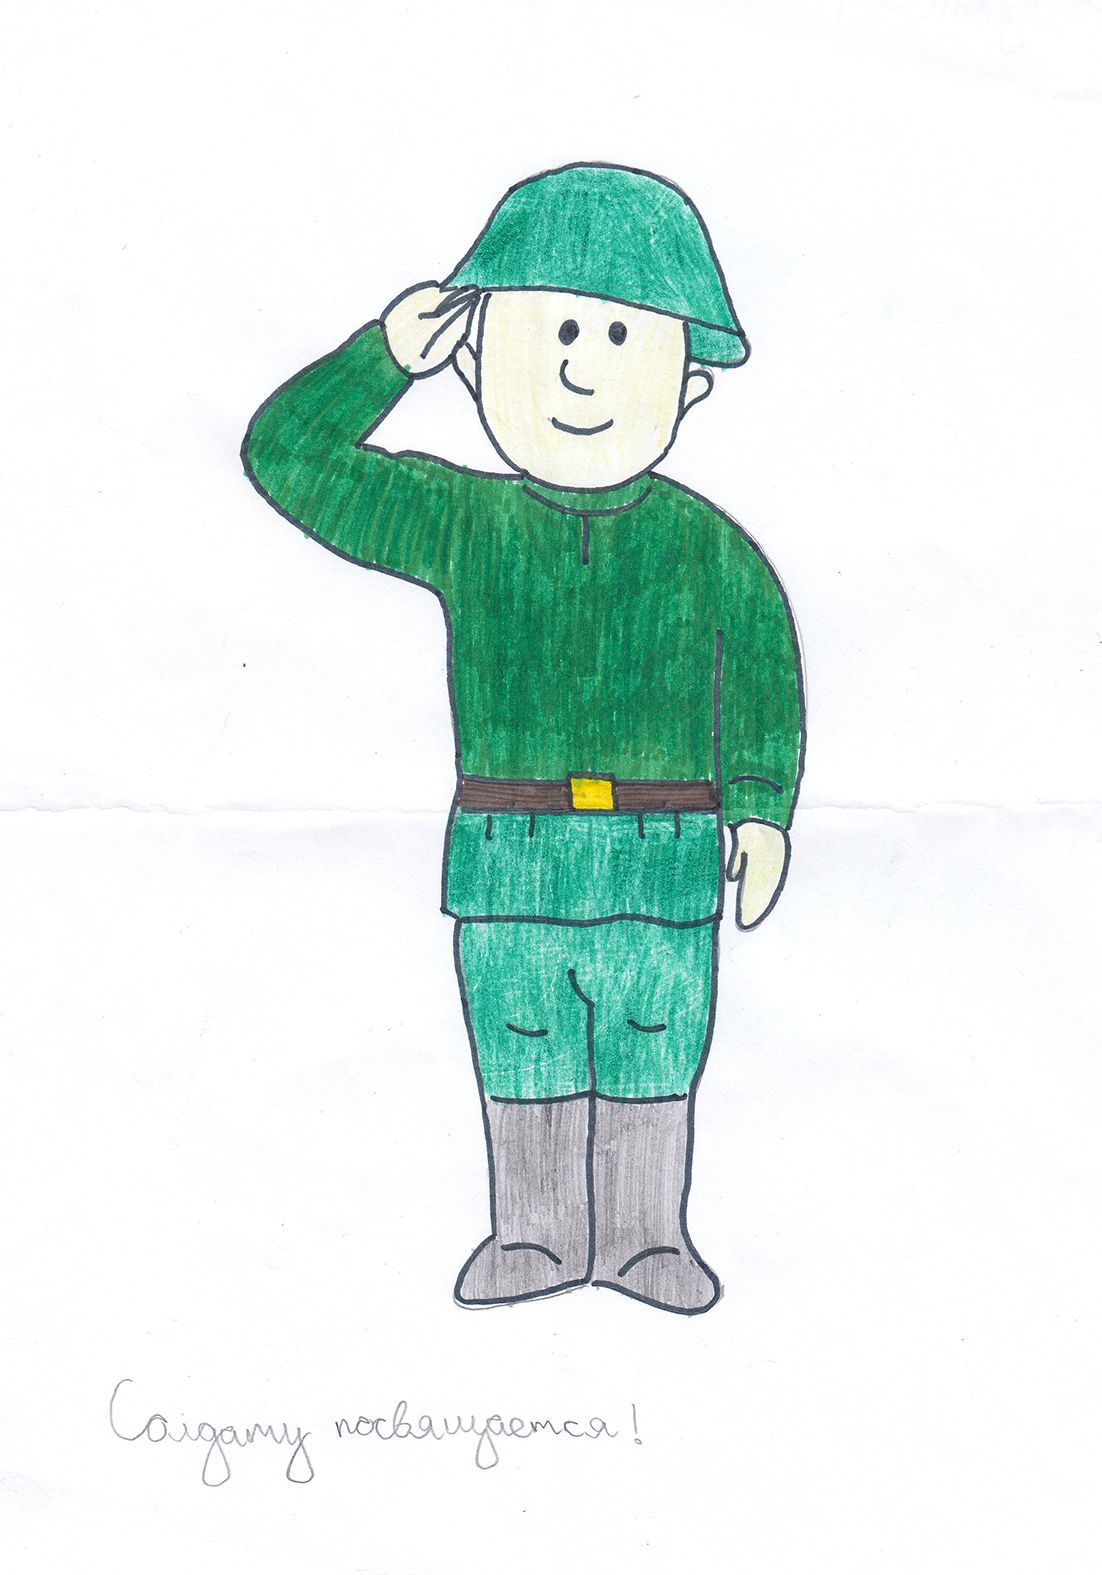 Нарисовать рисунок солдата карандашом